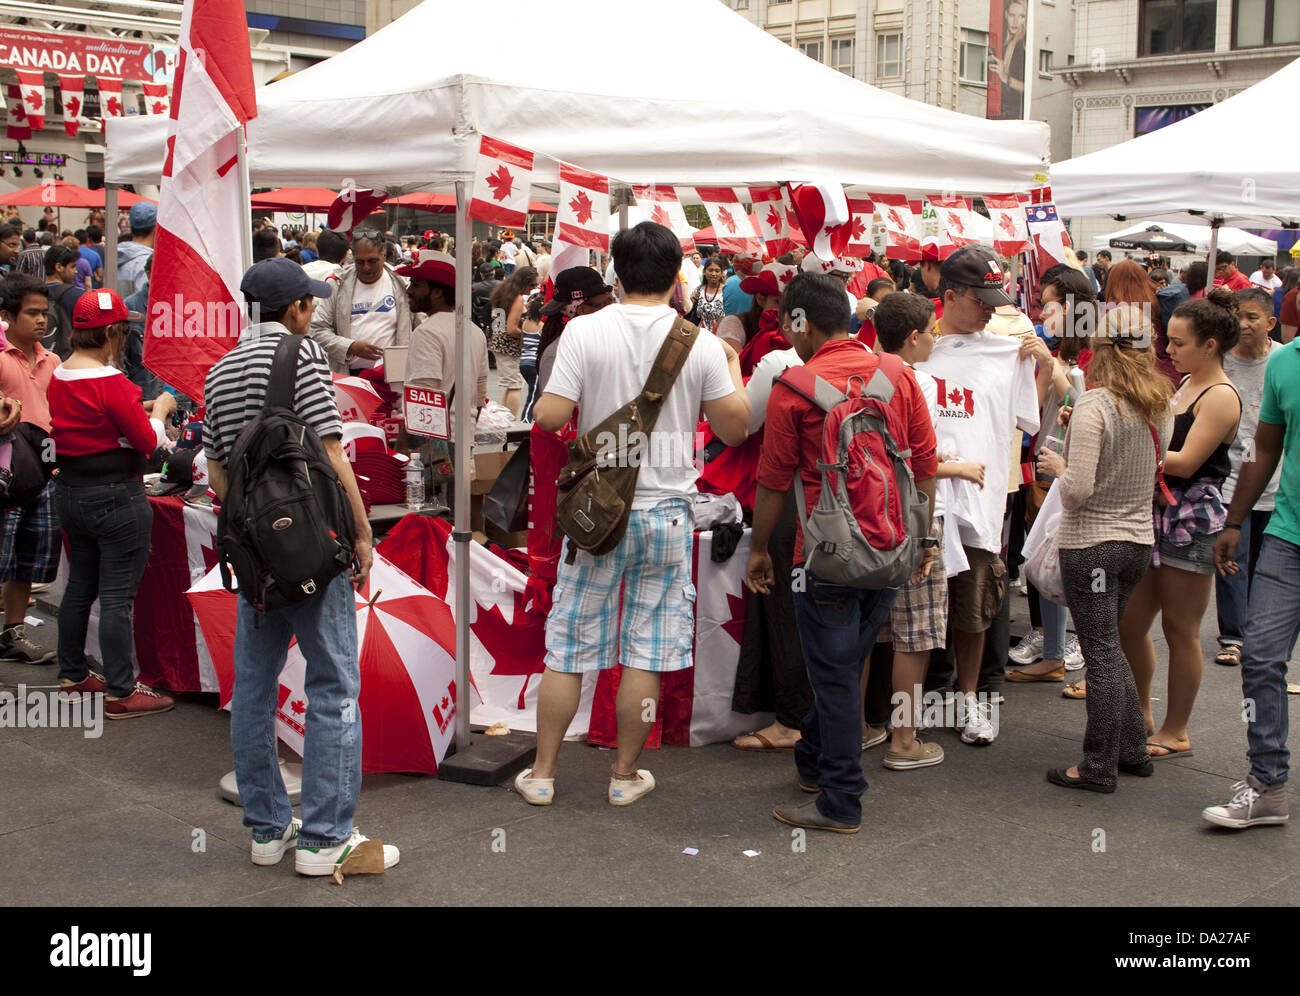 Toronto, Kanada. 1. Juli 2013. Menschen kaufen Bekleidung mit kanadischen Symbolen zu Selebrate Canada Day am Yonge-Dundas square 1. Juli 2013 in Toronto, Kanada. Bildnachweis: Igor Kisseleff/Alamy Live-Nachrichten Stockfoto